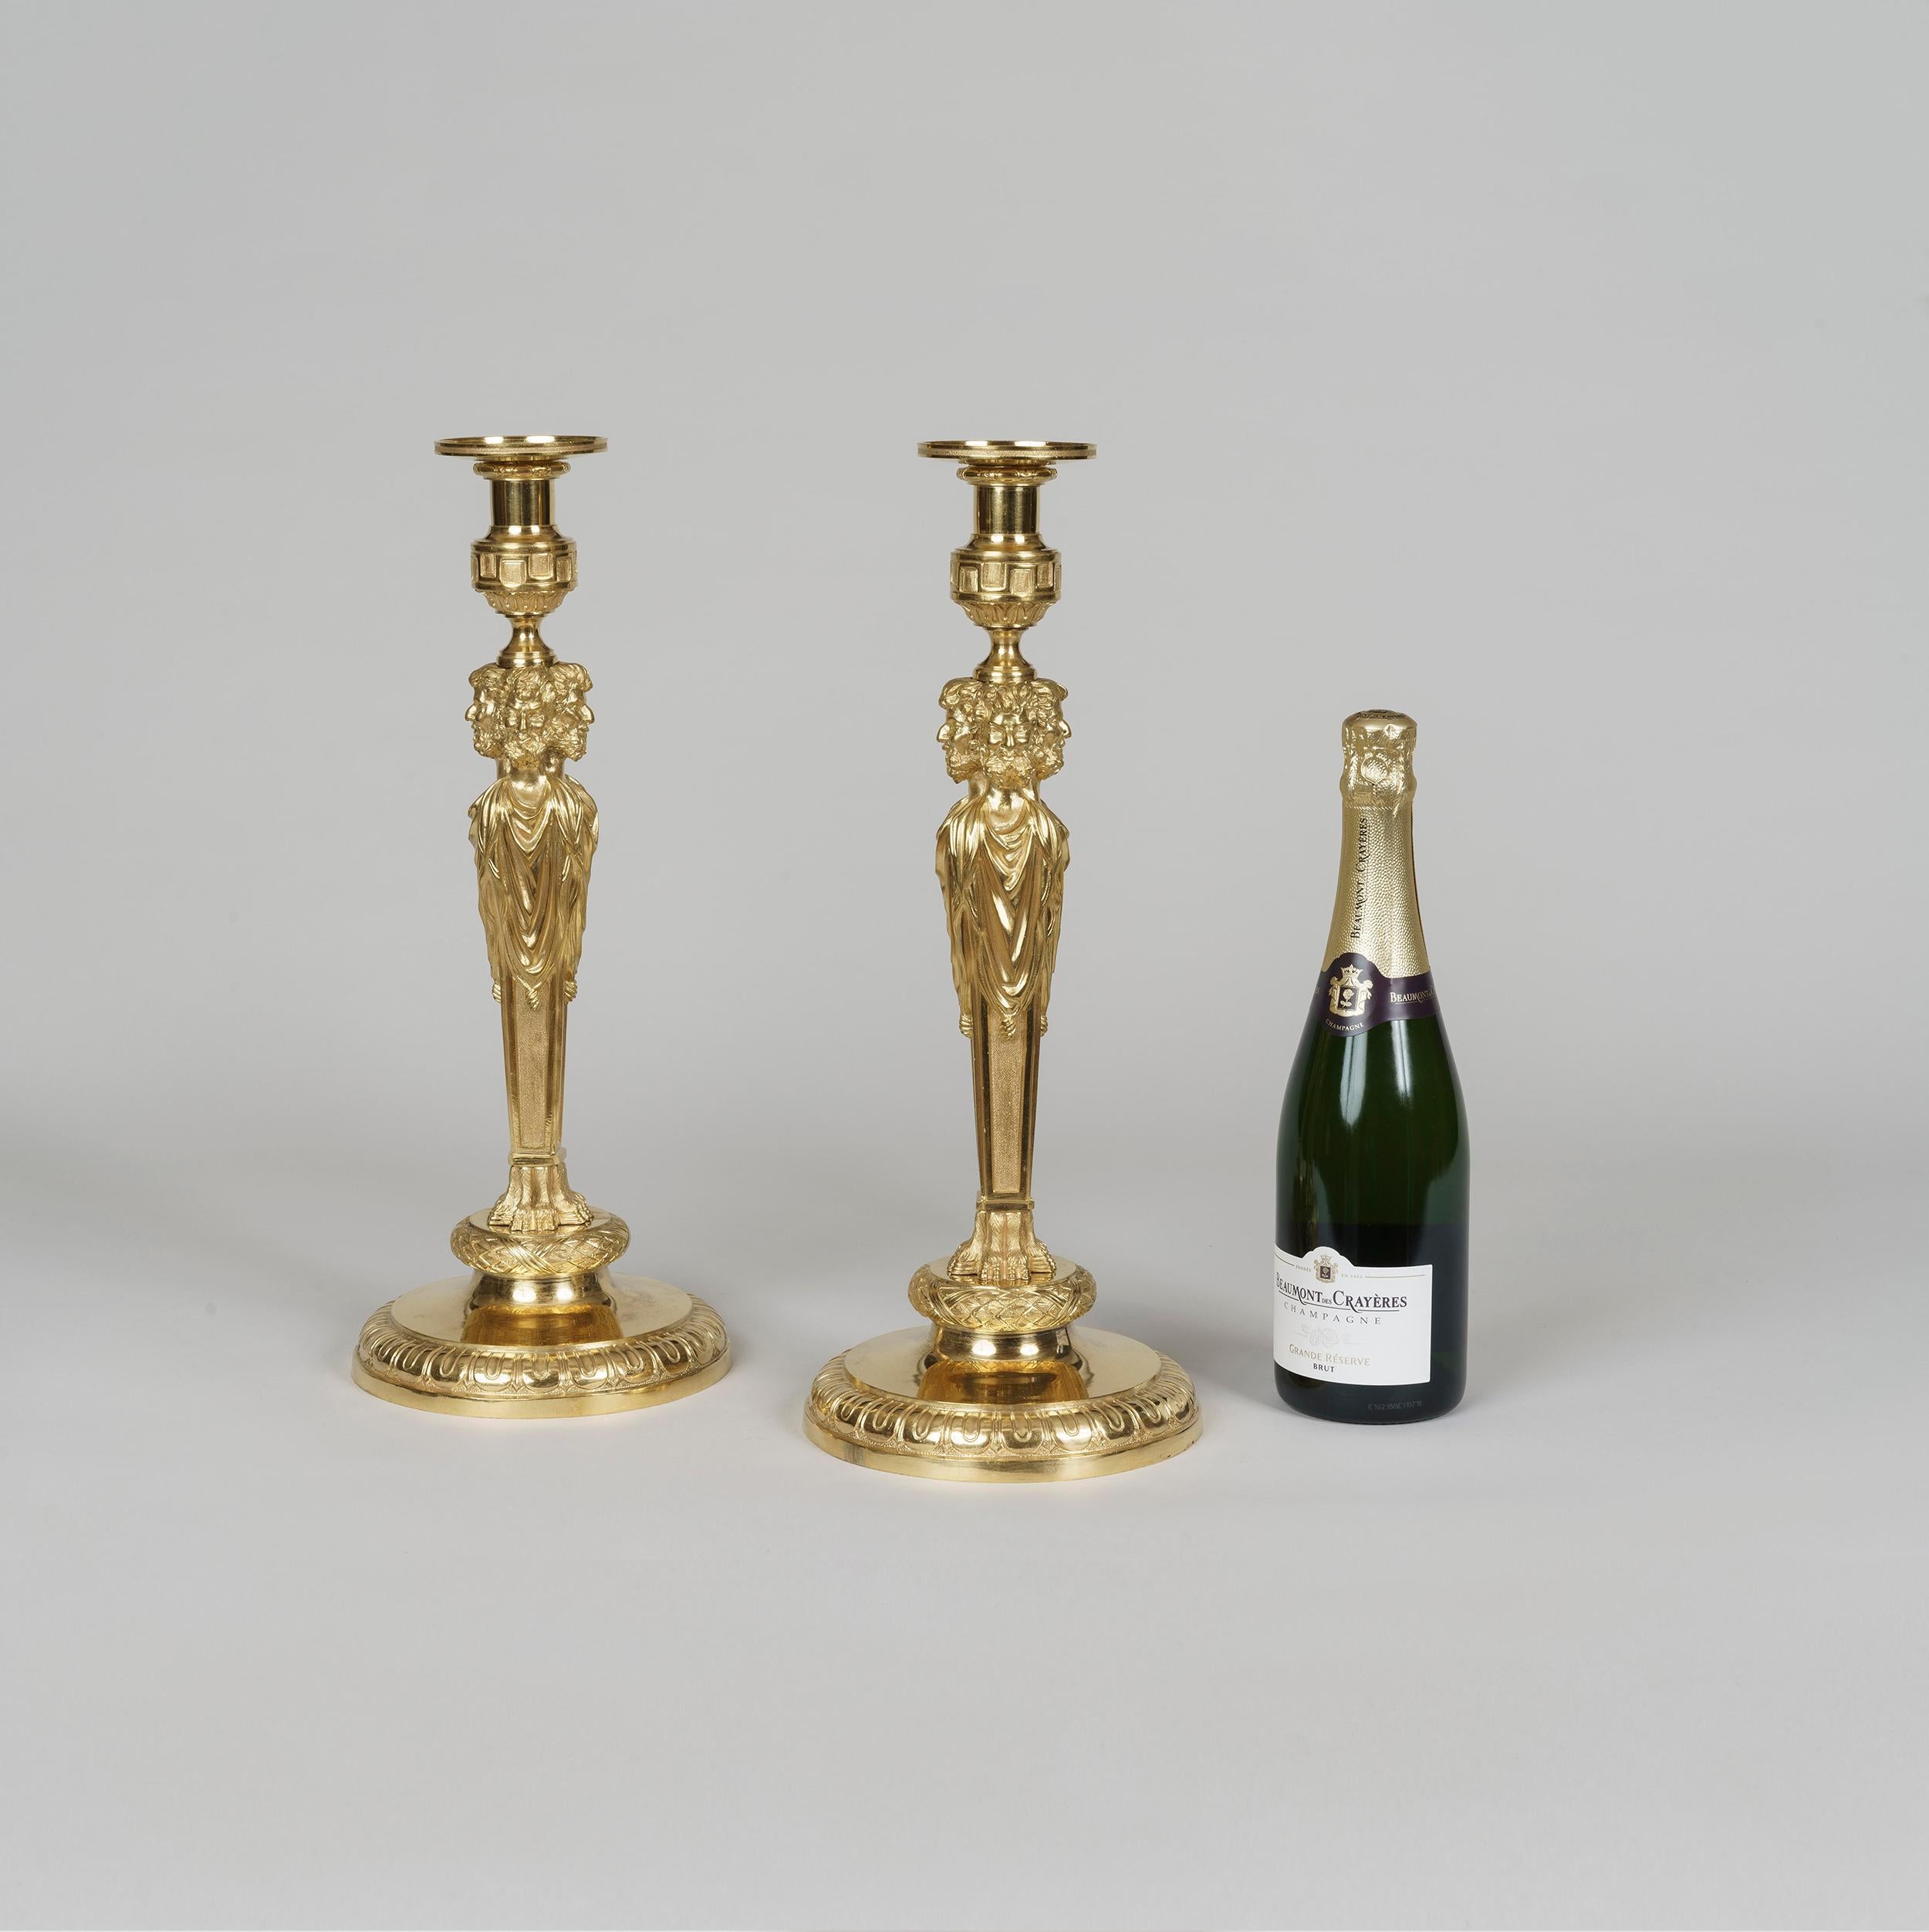 Ein bedeutendes Paar Ormolu-Kerzenhalter im Louis-XVI-Stil
Nach dem Vorbild von Pierre Gouthière

Von beachtlicher Größe und fachmännisch in mattierter und brünierter Bronze gegossen. Der runde Sockel hat verzierte Ränder; der rechteckige Schaft